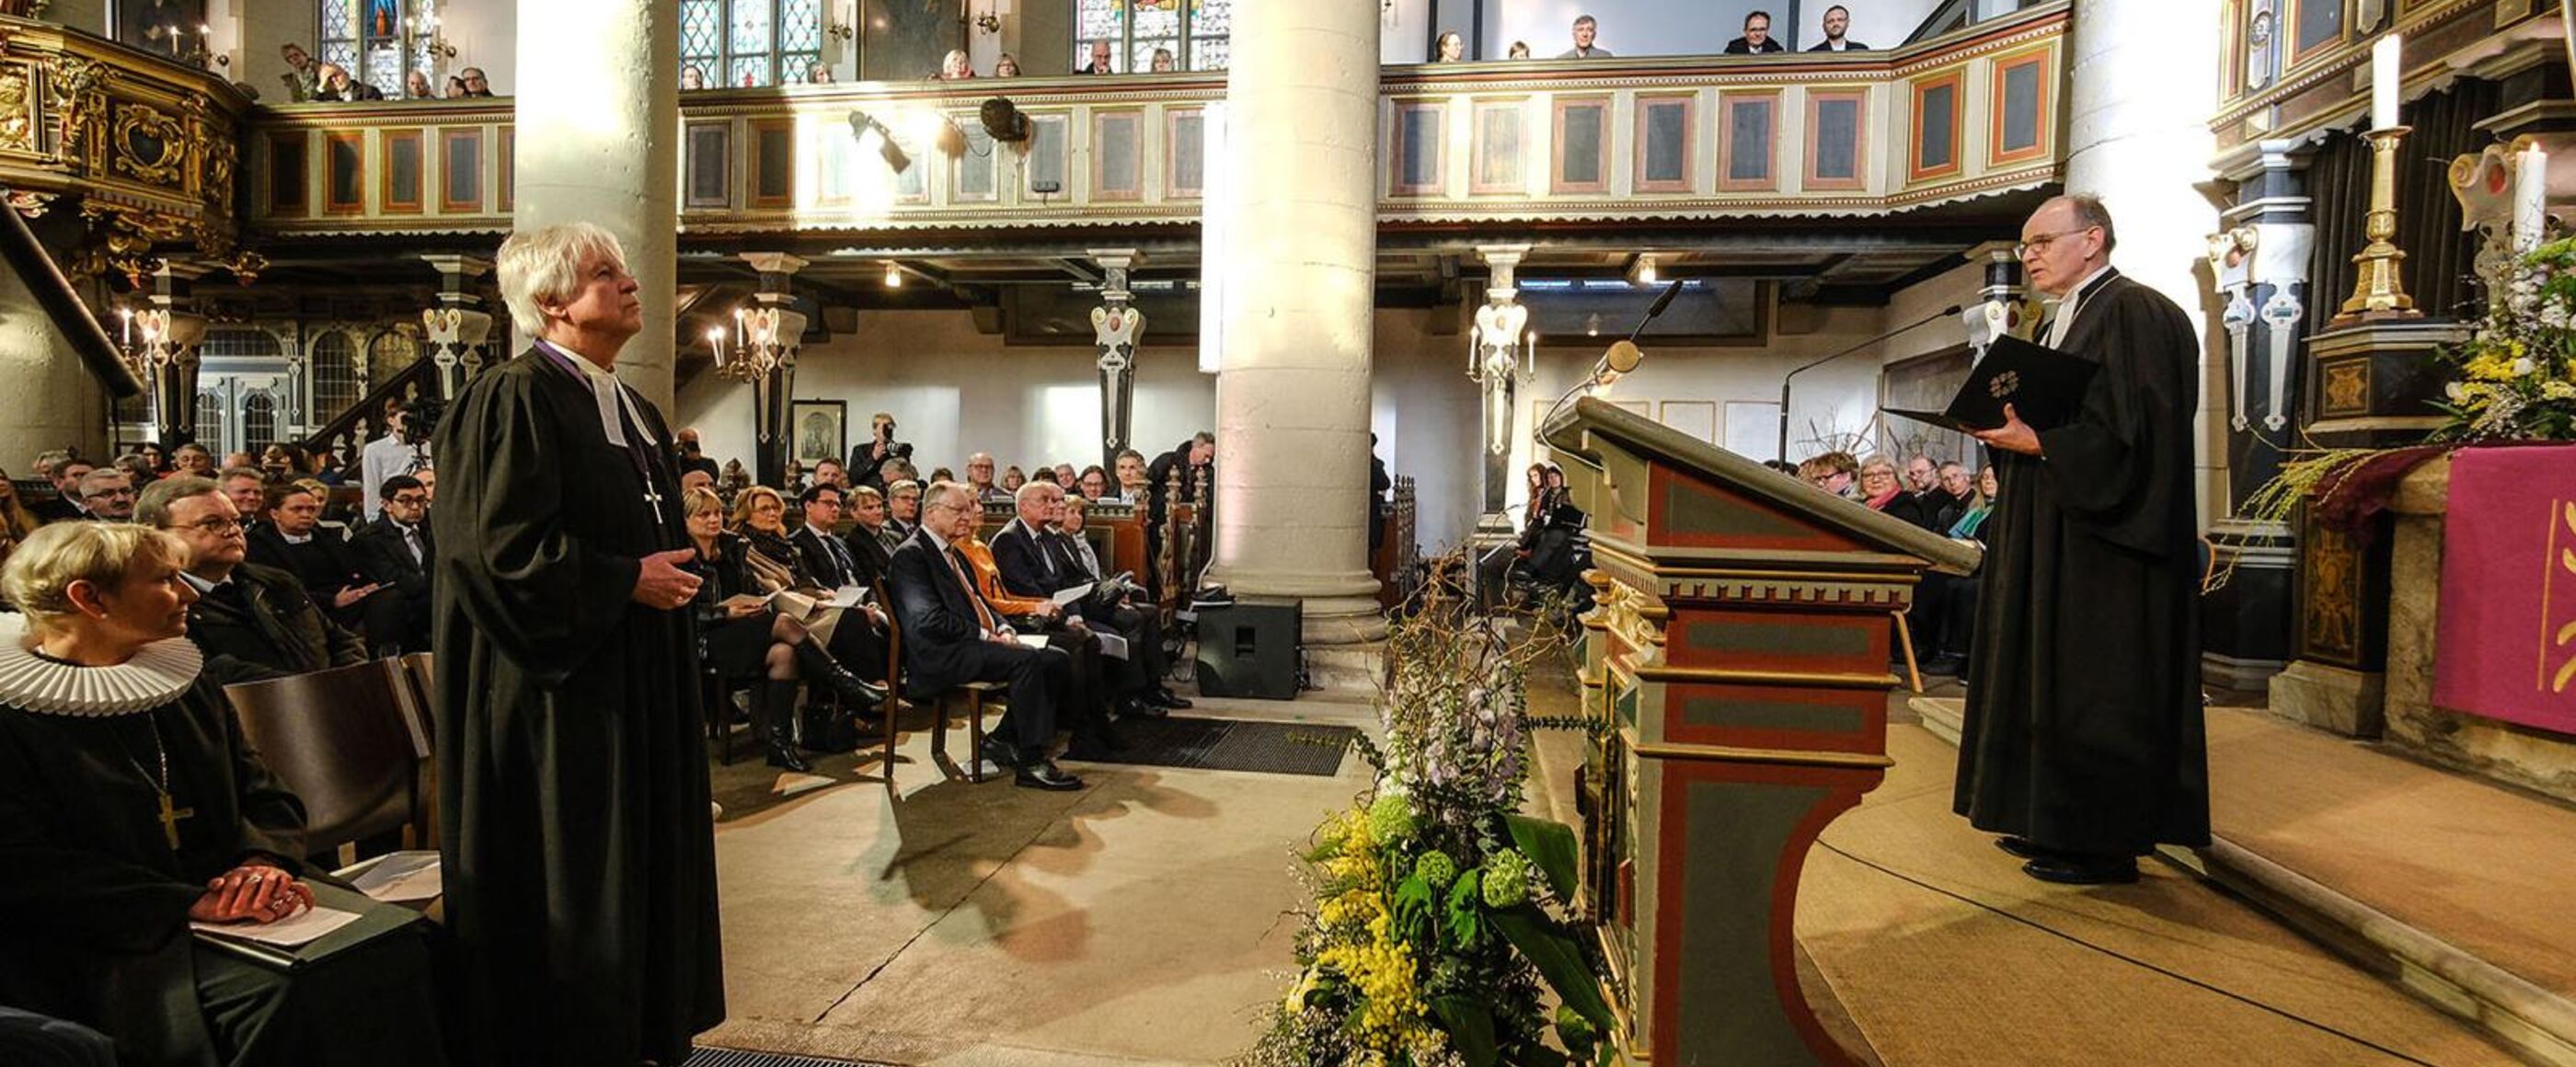 Zwei männlich zu lesende Personen im Taler stehen sich im Altarraum einer Kirche gegenüber.